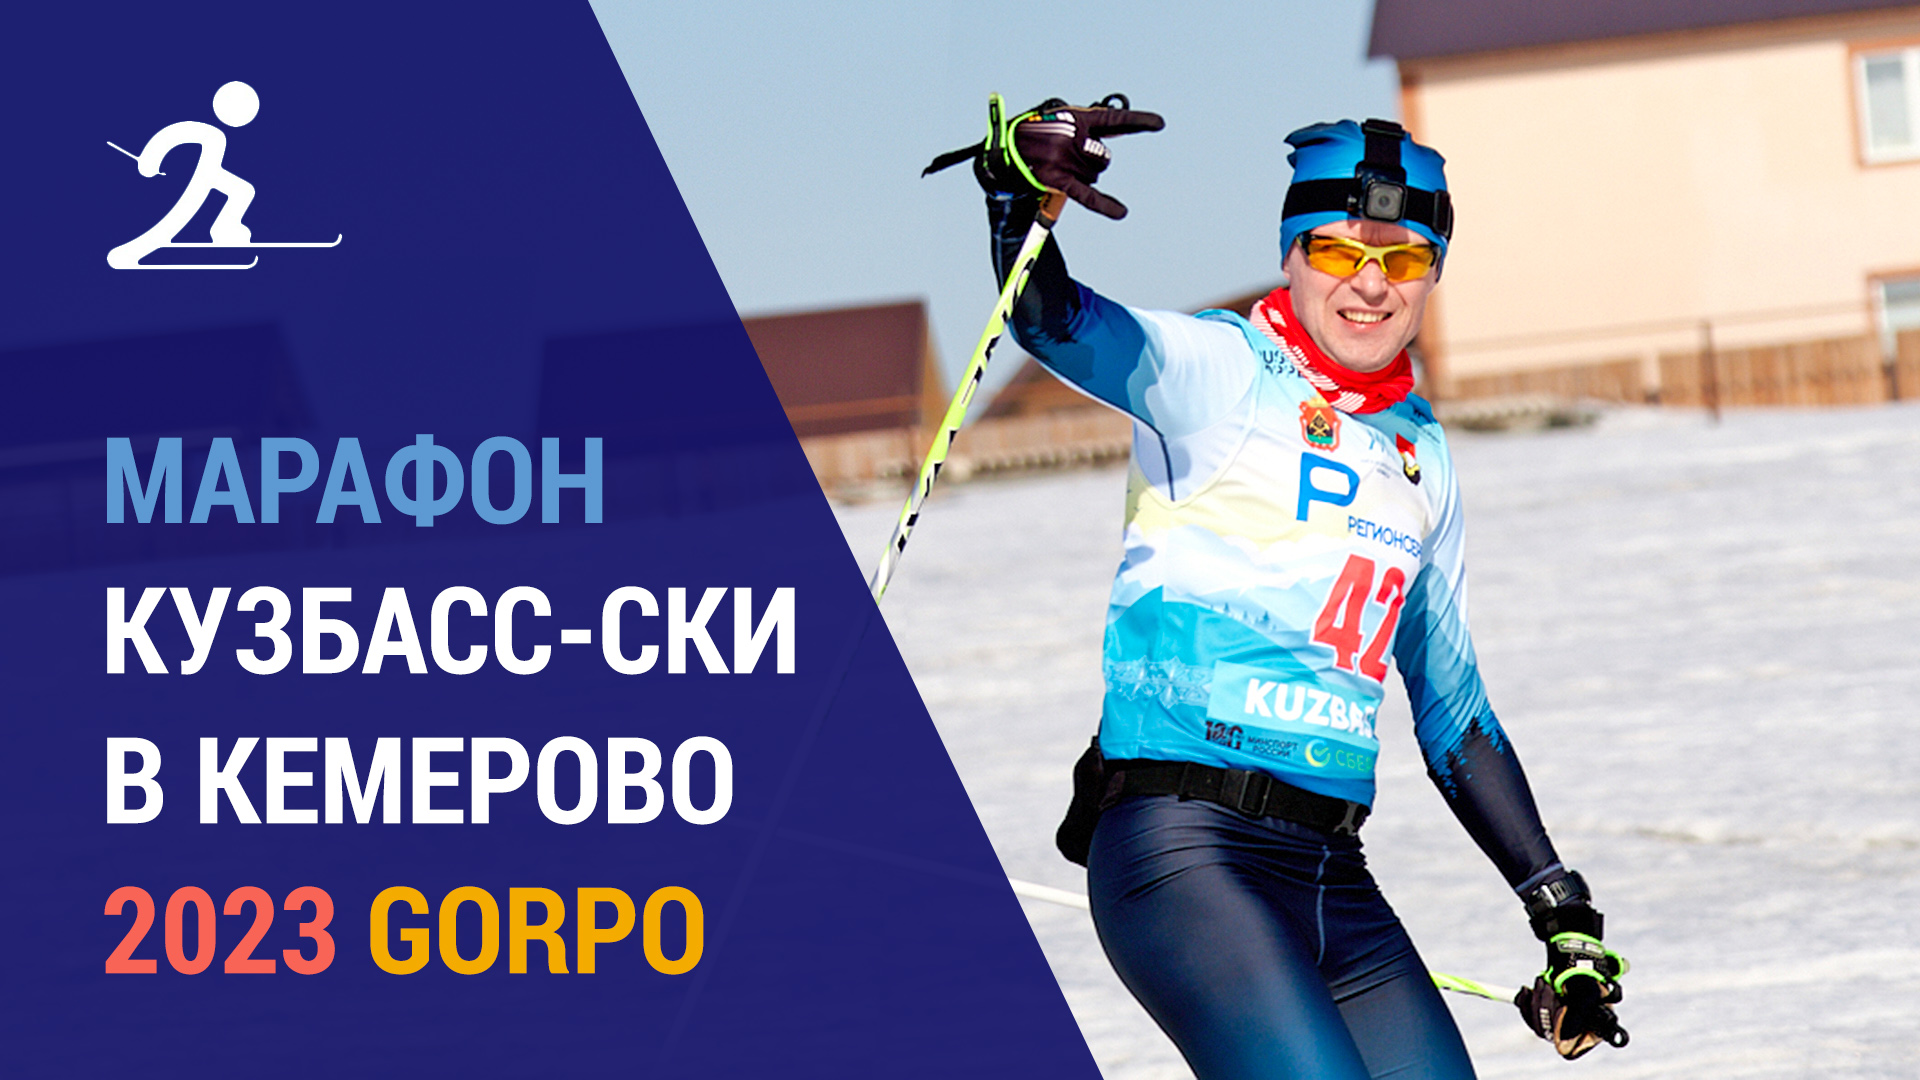 Марафон Кузбасс-ски с GoPro